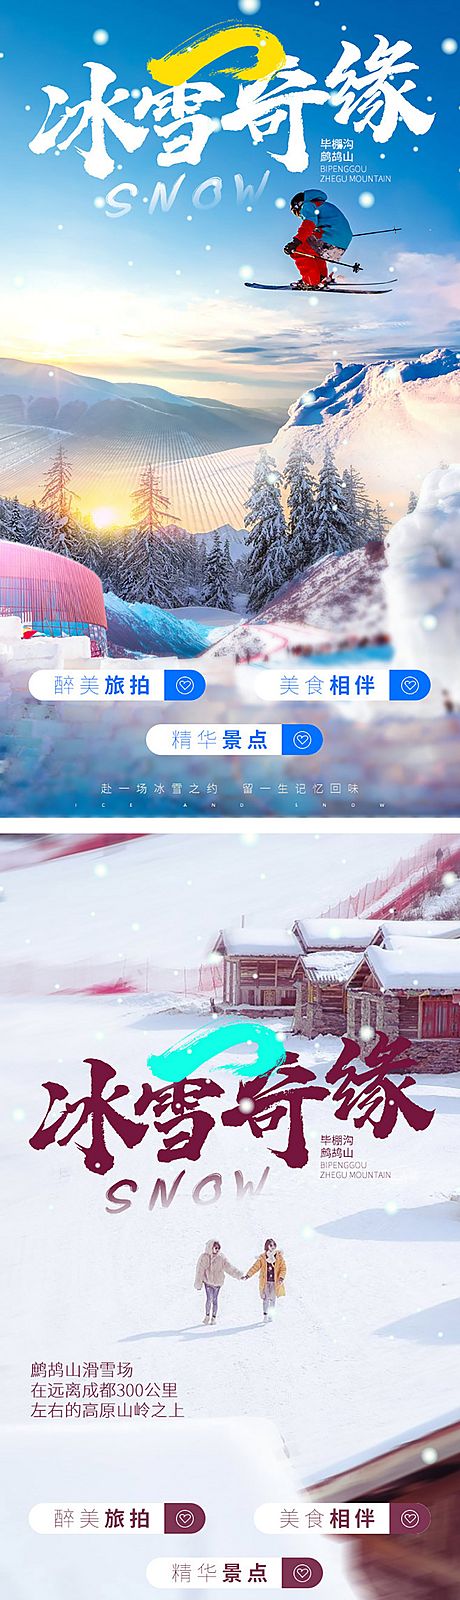 仙图网-雪地旅拍海报